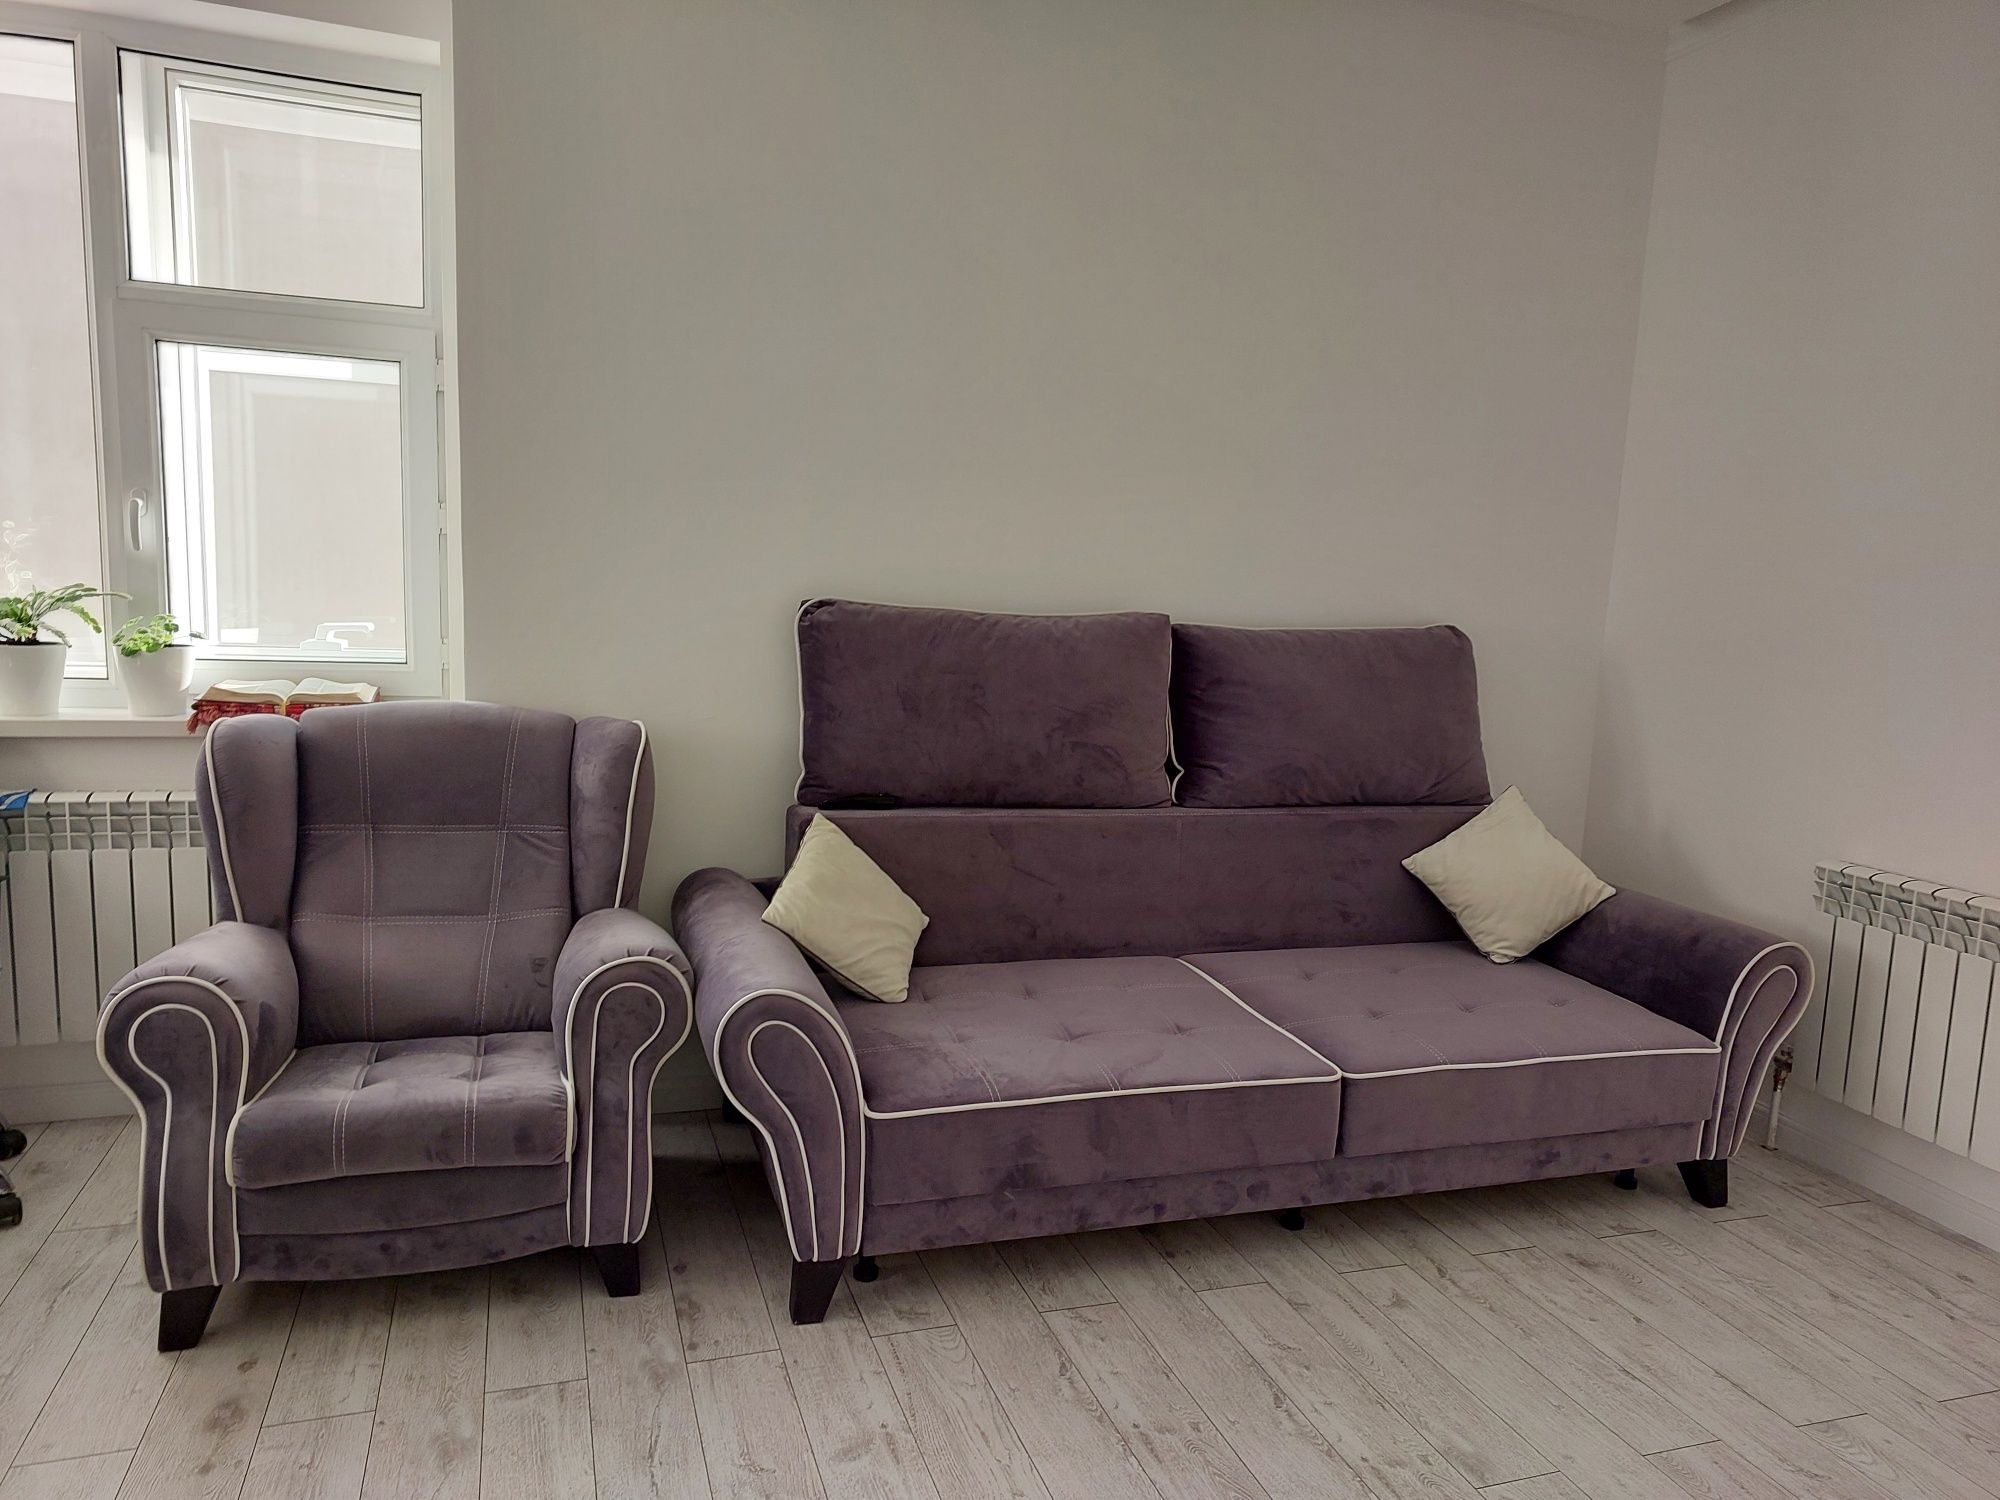 Продам мягкую мебель ( диван с подушками и кресло) + шторы